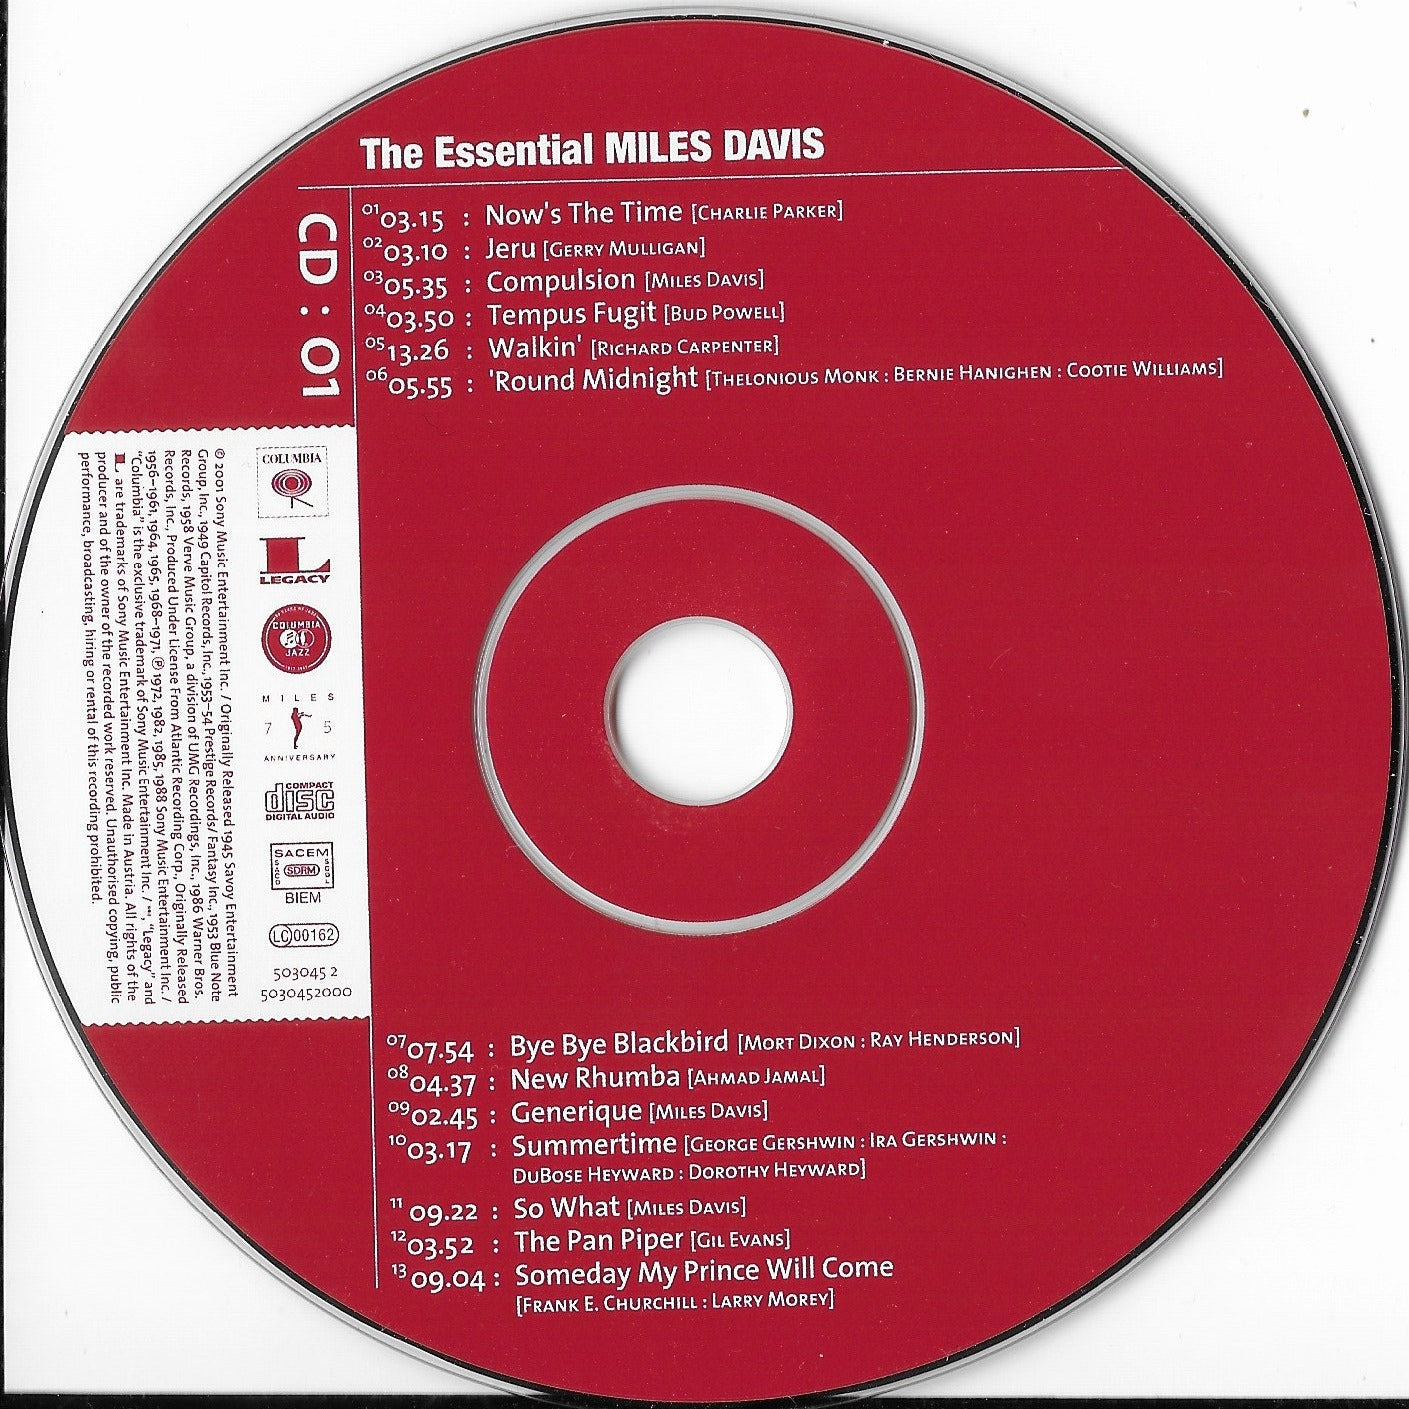 MILES DAVIS - The Essential Miles Davis